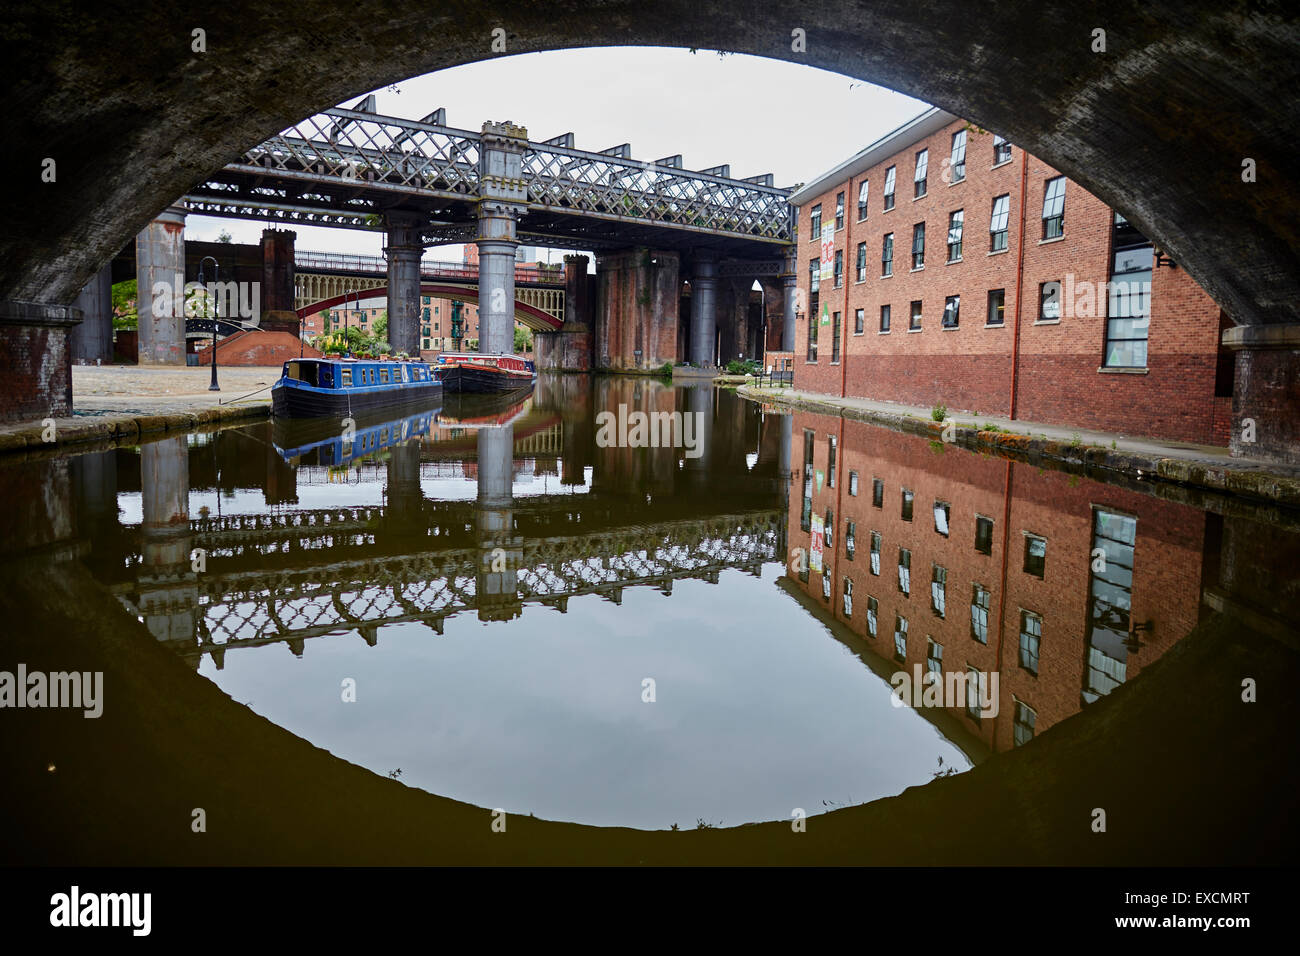 Castlefiled Becken im Stadtzentrum von Manchester eine erste Zug kreuzt der Viadukt-Boot-Kanal, Kanäle Narrowboat Fluss Stream wate Stockfoto